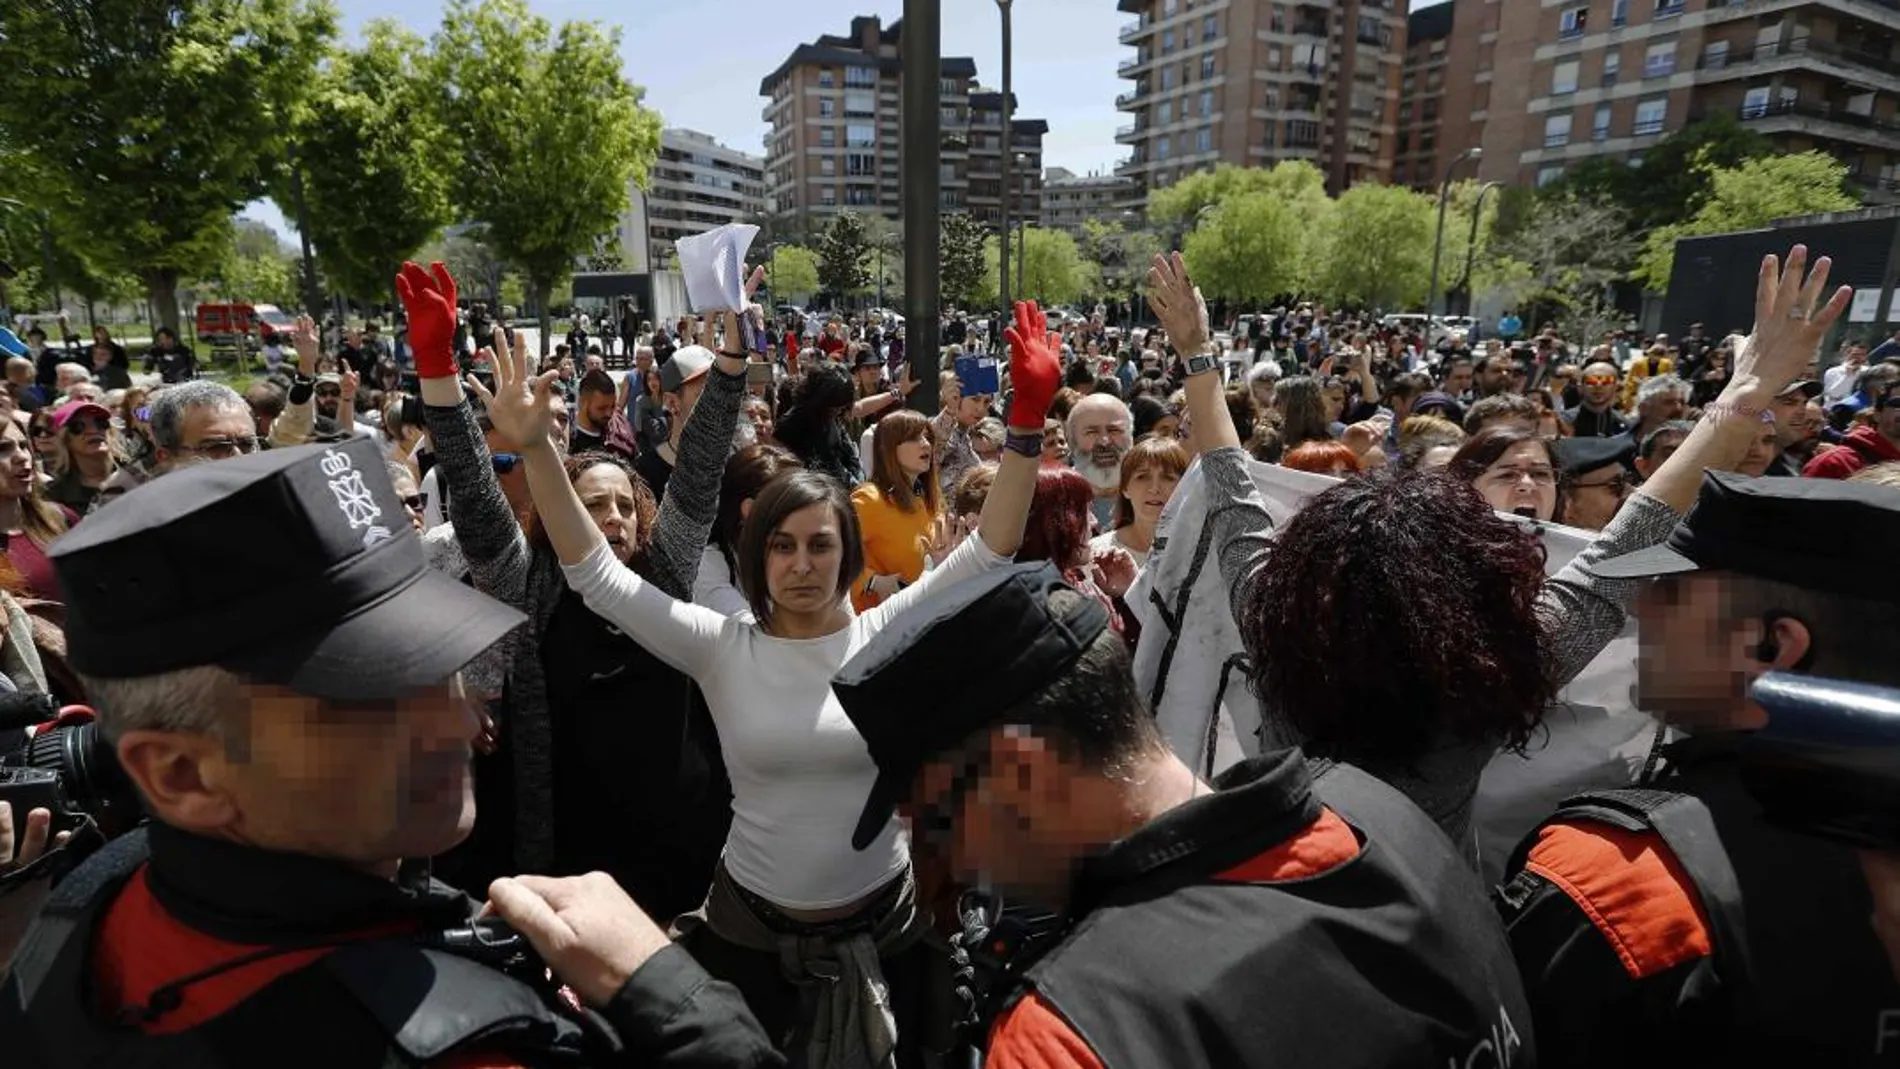 La plaza situada ante el Palacio de Justicia de Pamplona ha sido escenario de momentos de gran tensión cuando los cientos de manifestantes que están expresando su indignación por el fallo judicial de La Manada